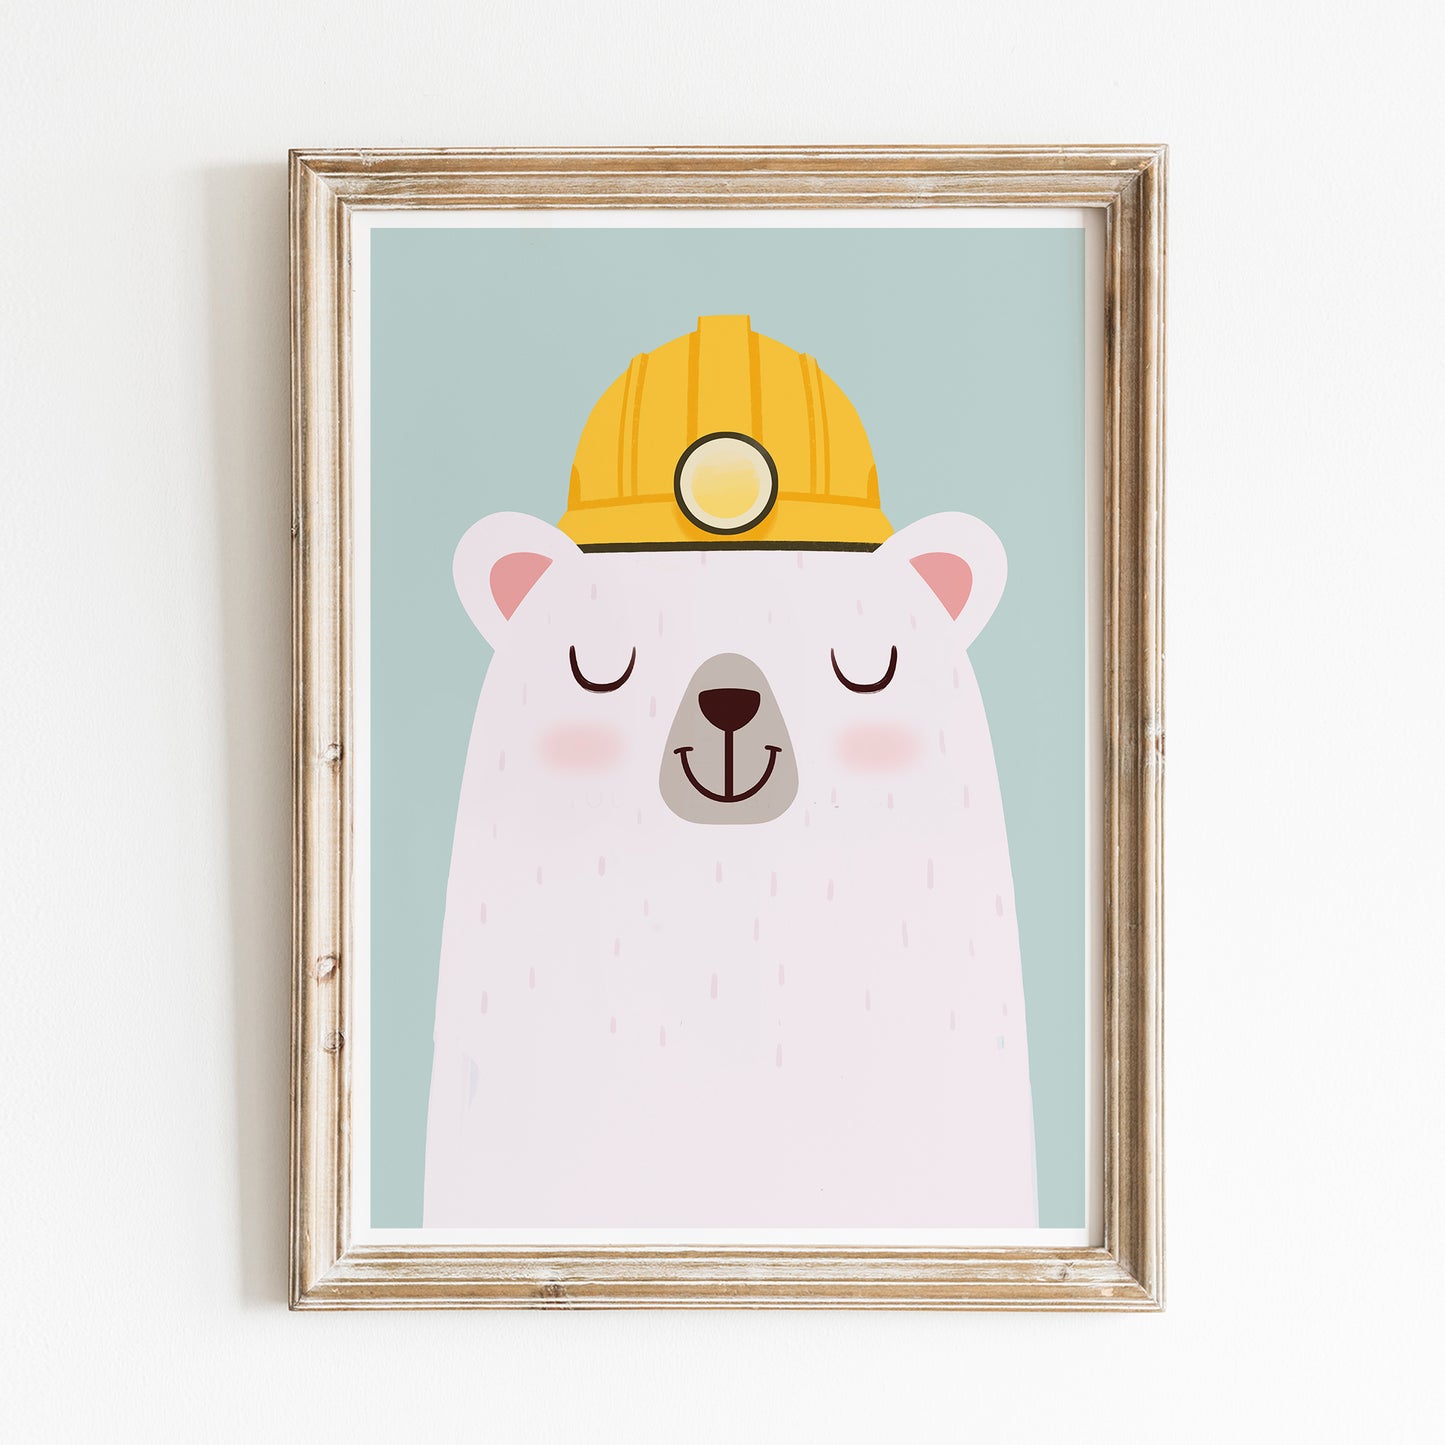 Construction worker bear print